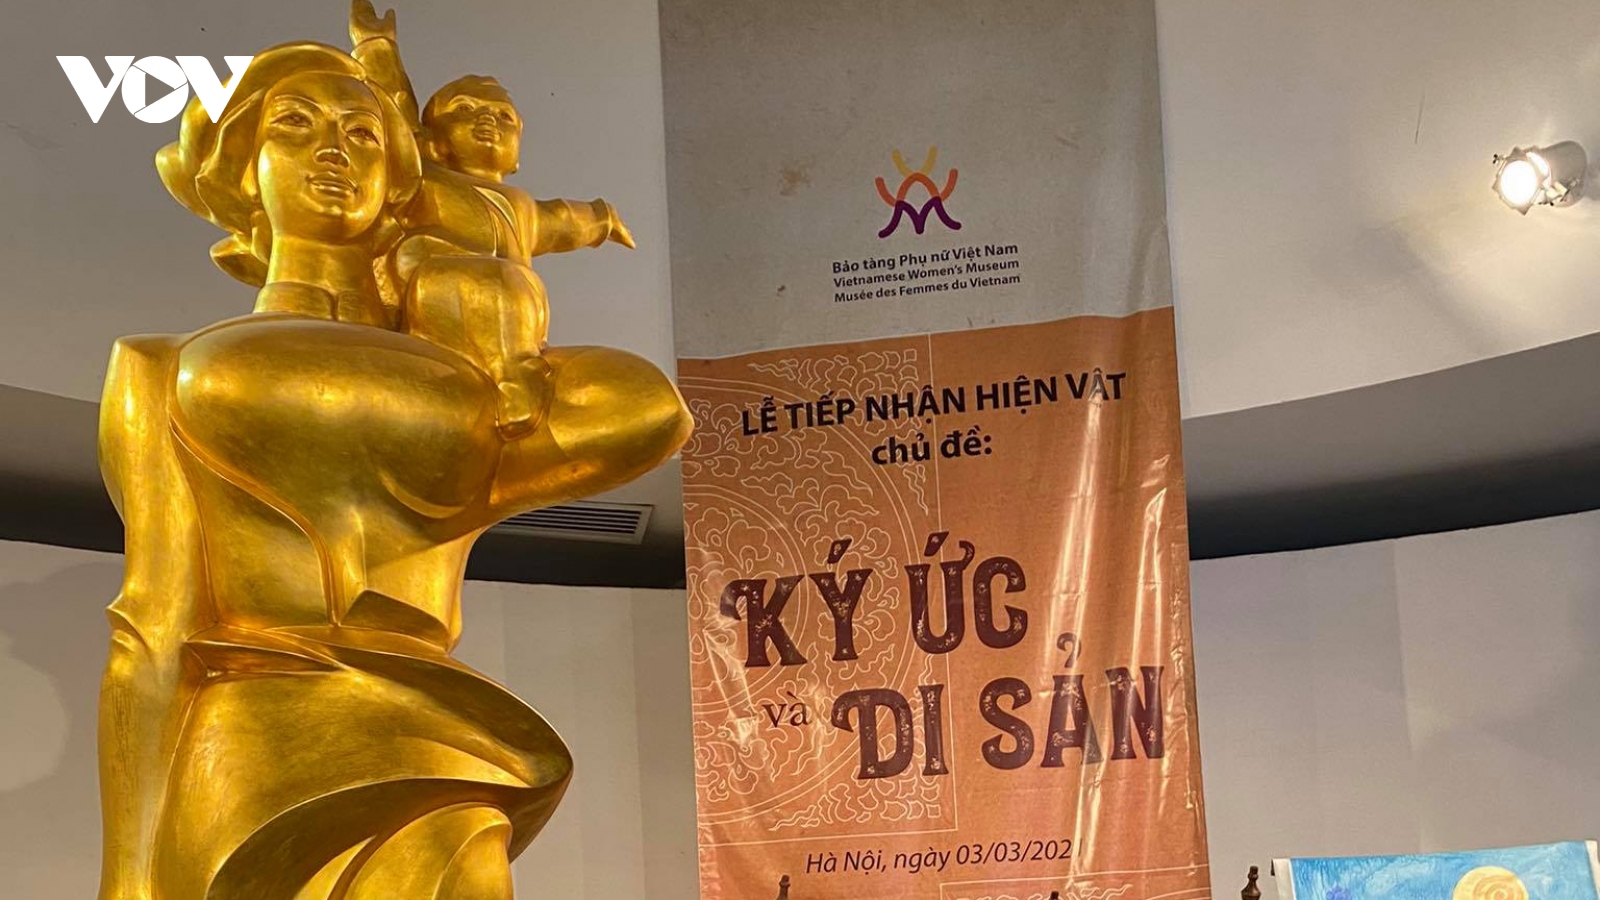 Bảo tàng Phụ nữ Việt Nam tiếp nhận hình ảnh, hiện vật với chủ đề “Ký ức và di sản"